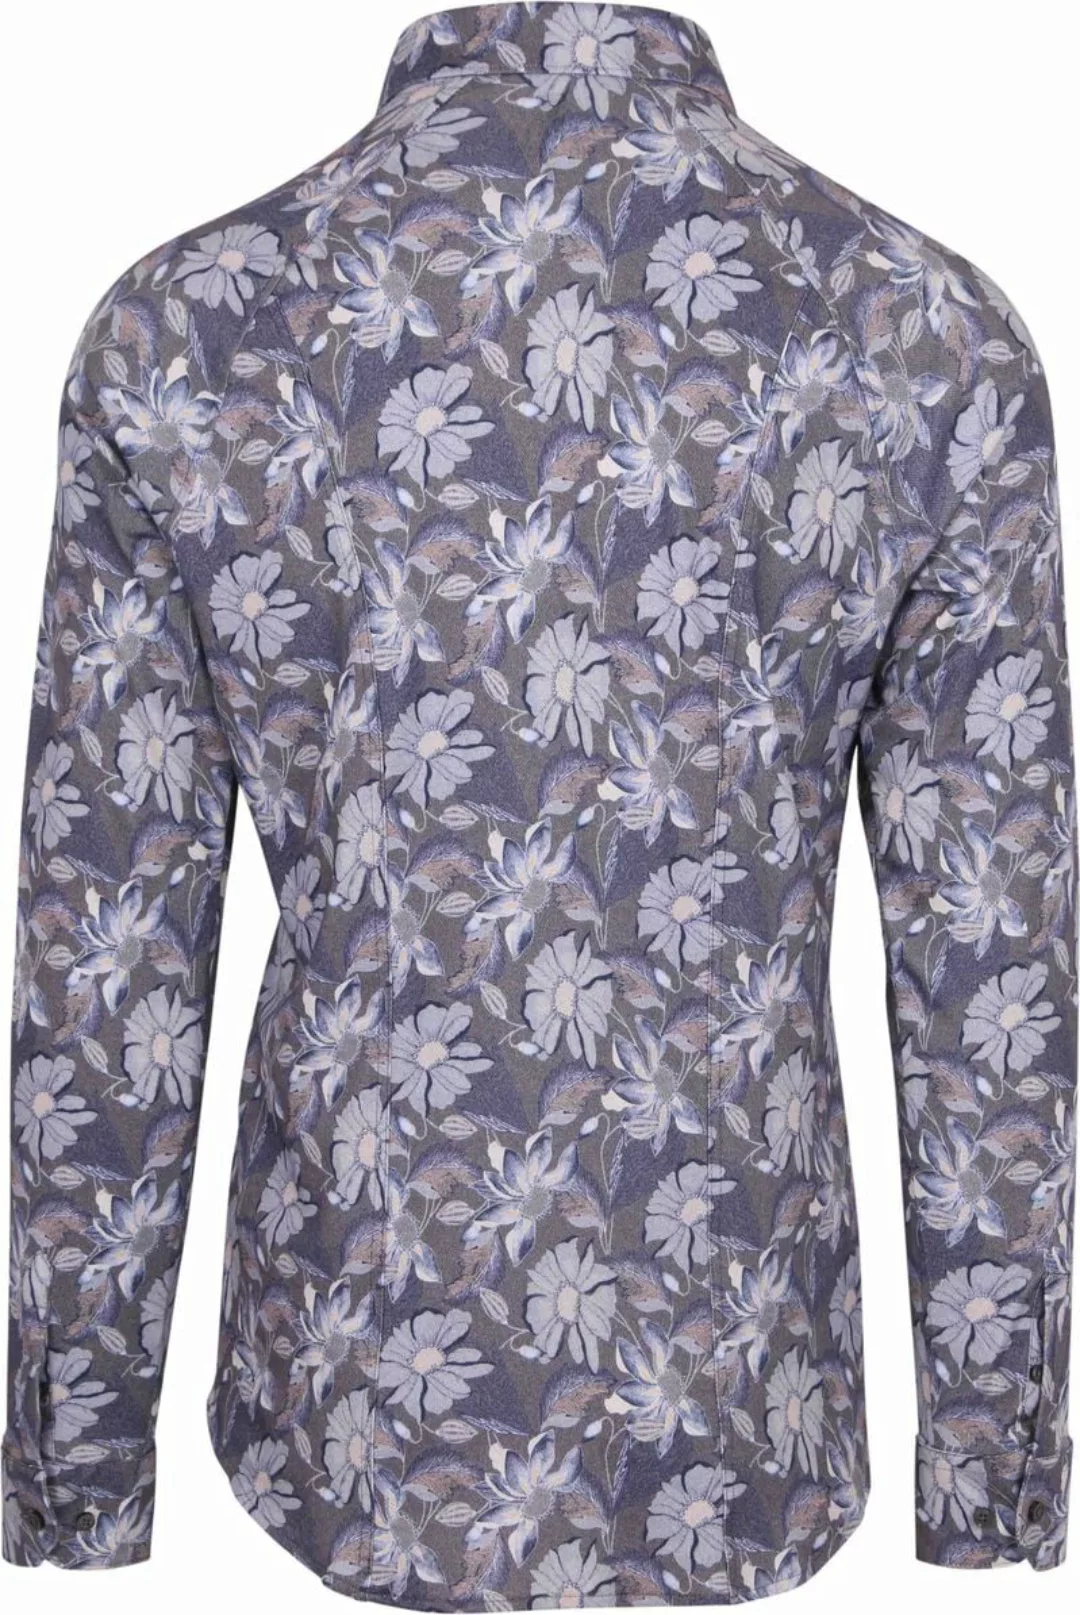 DESOTO Hemd Timeless Elegance Druck Blumen Blau  - Größe S günstig online kaufen